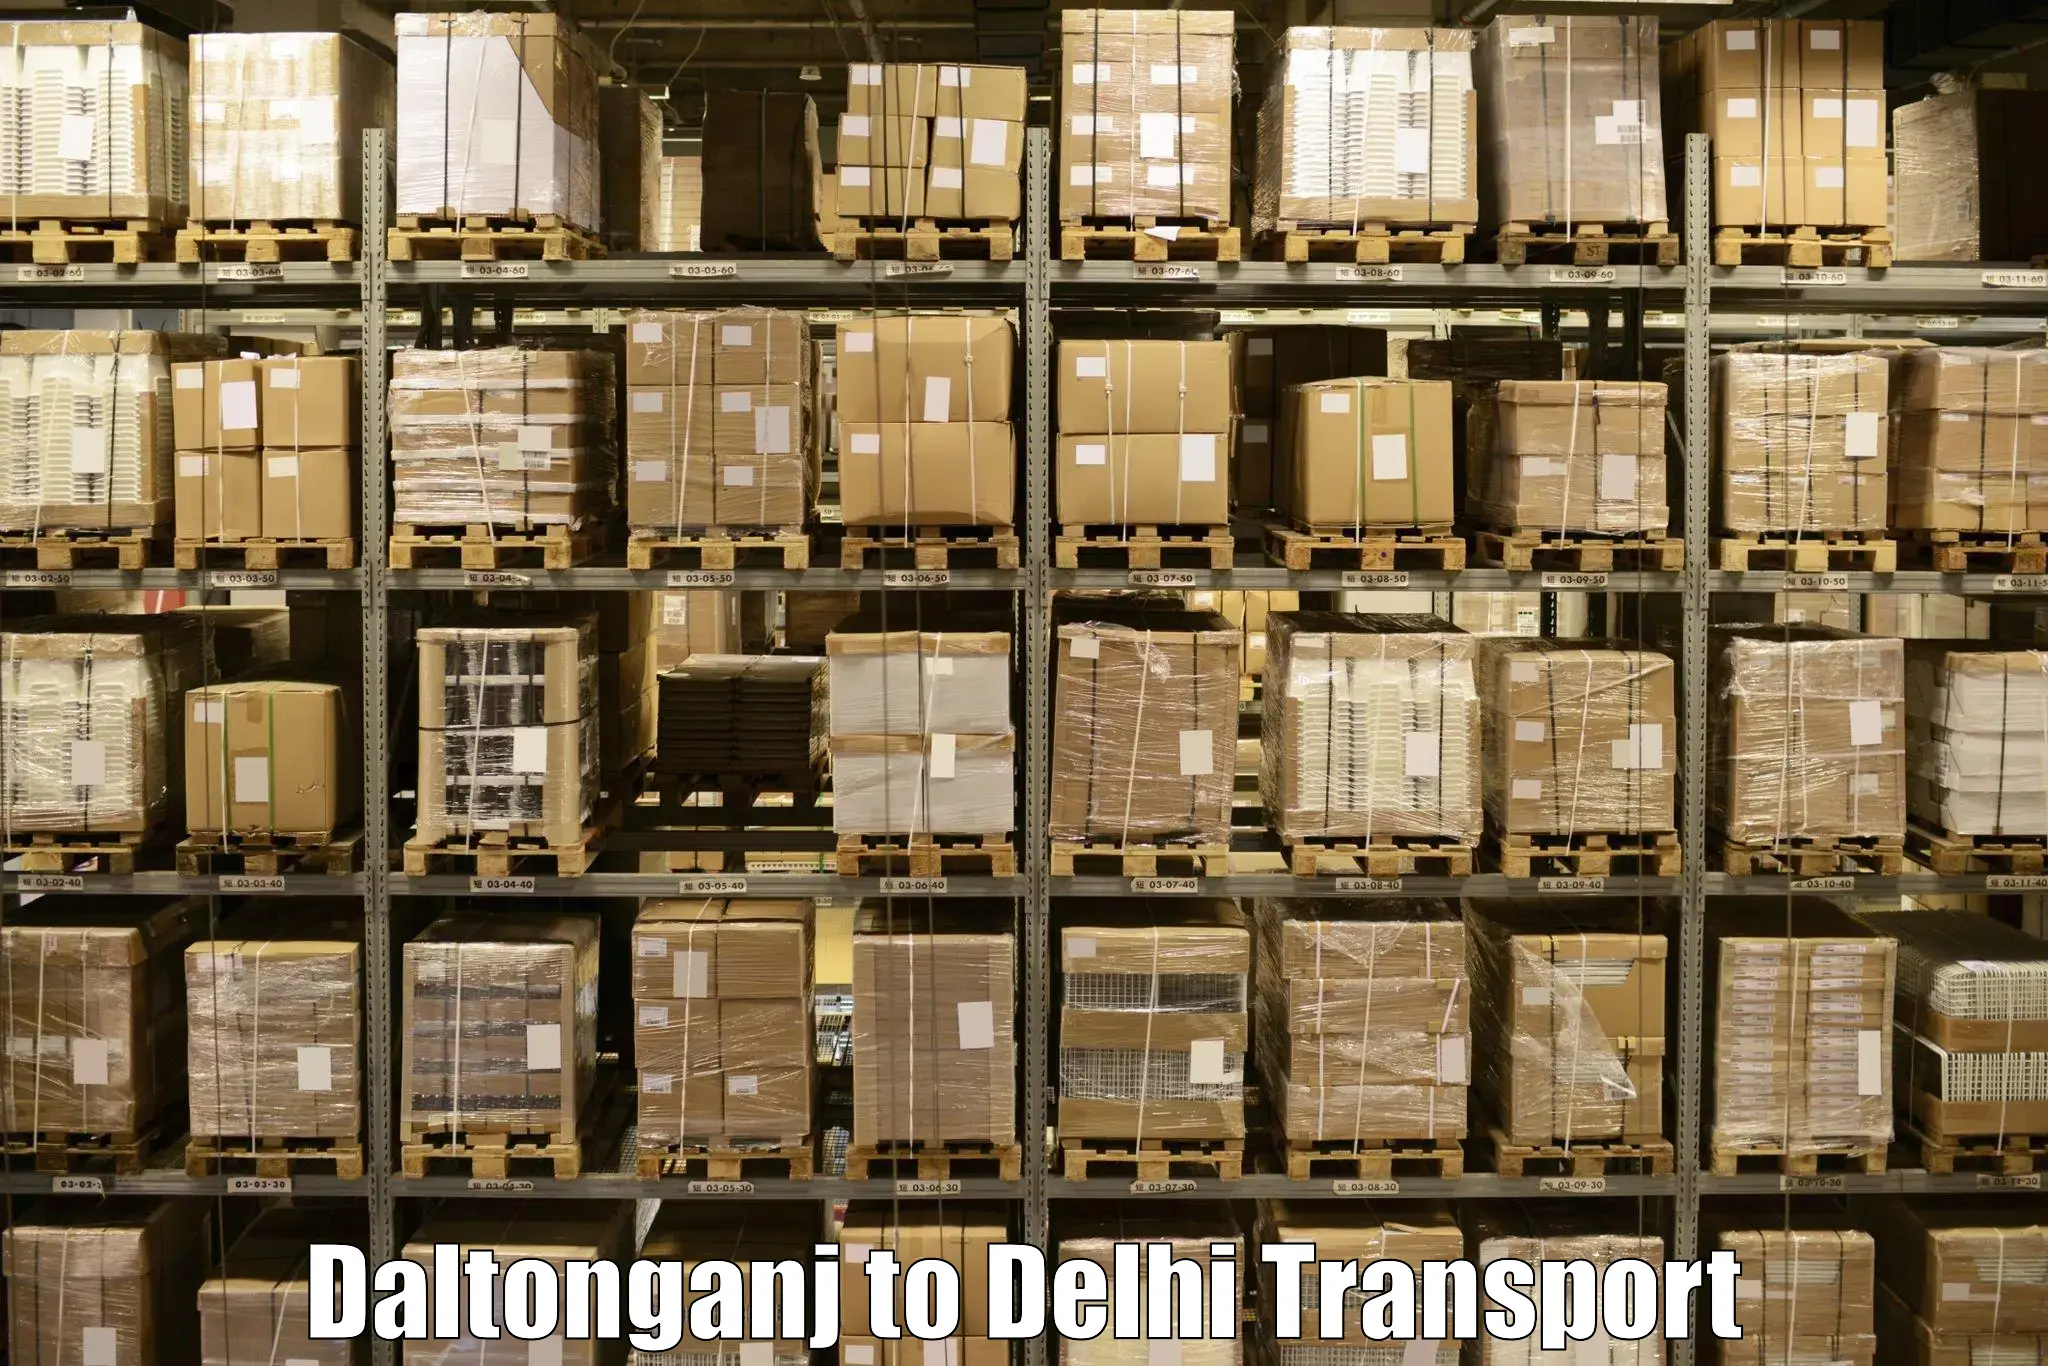 Commercial transport service Daltonganj to IIT Delhi